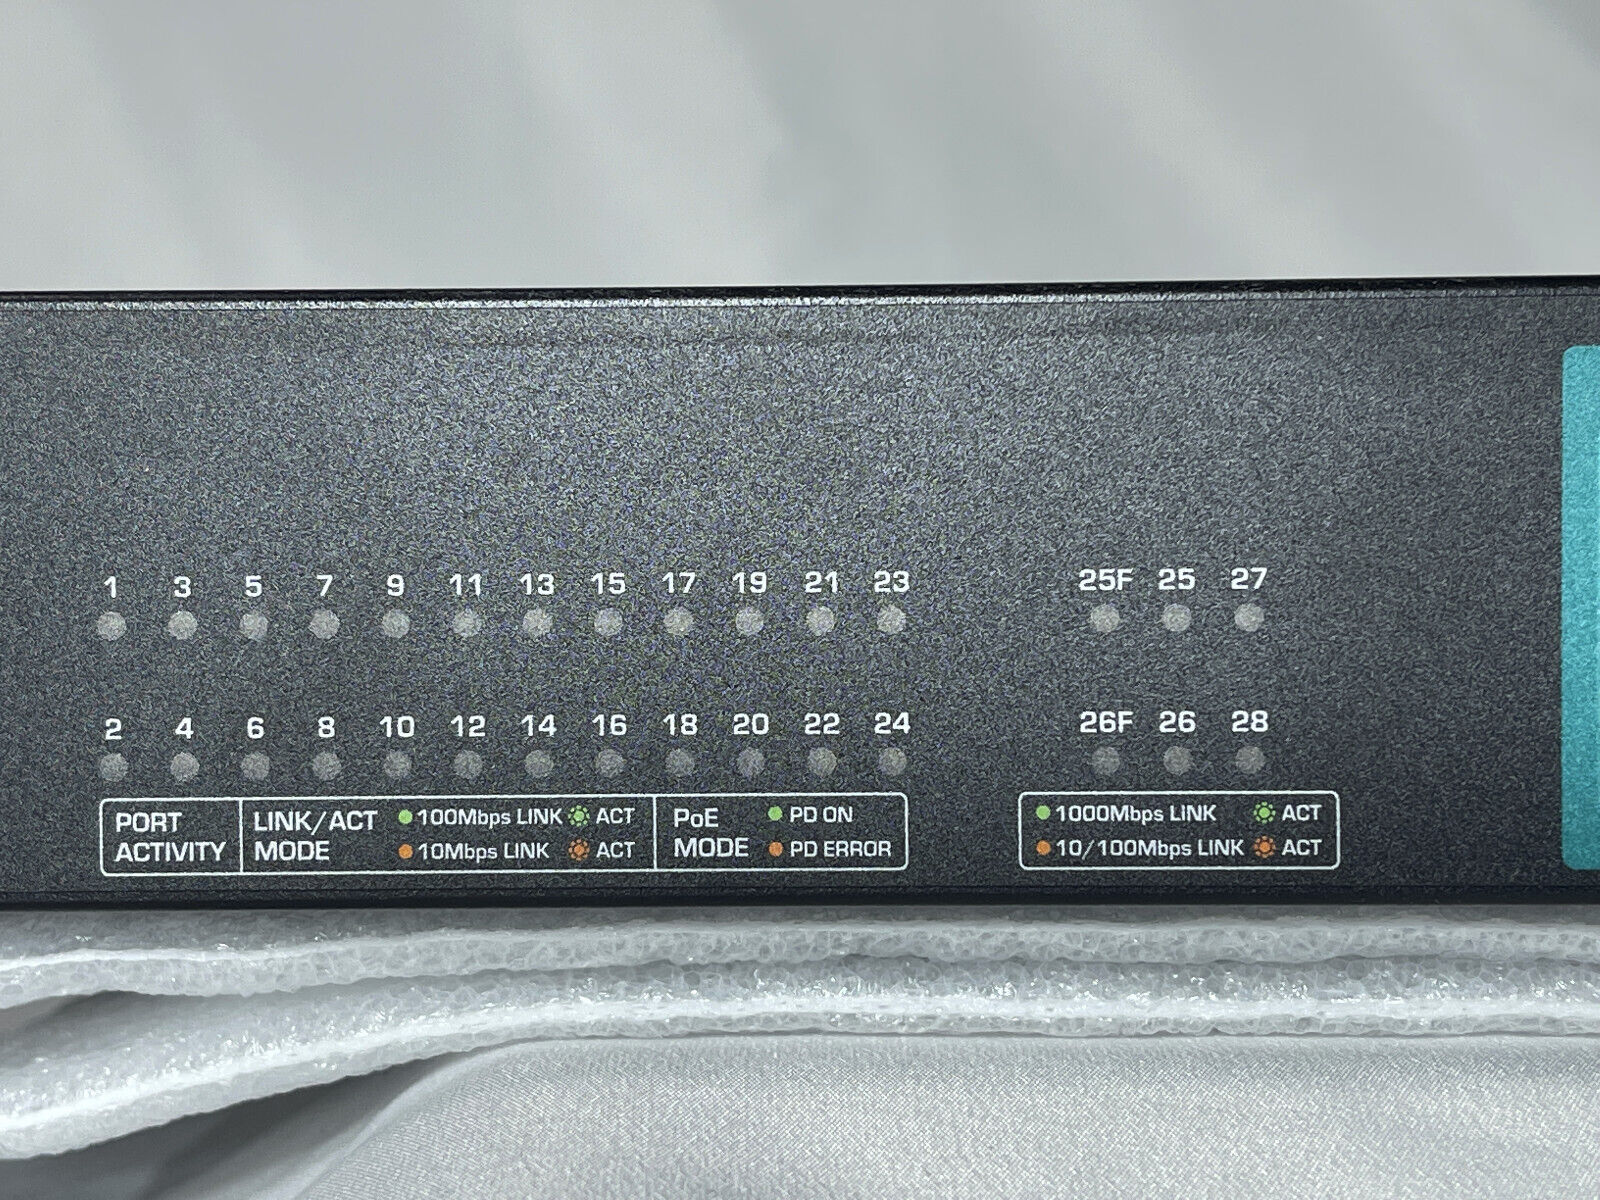 TRENDnet TPE-224WS  24-Port 10/100 Mbps + 4-Port 1GbE Web Smart PoE+ Switch 193W